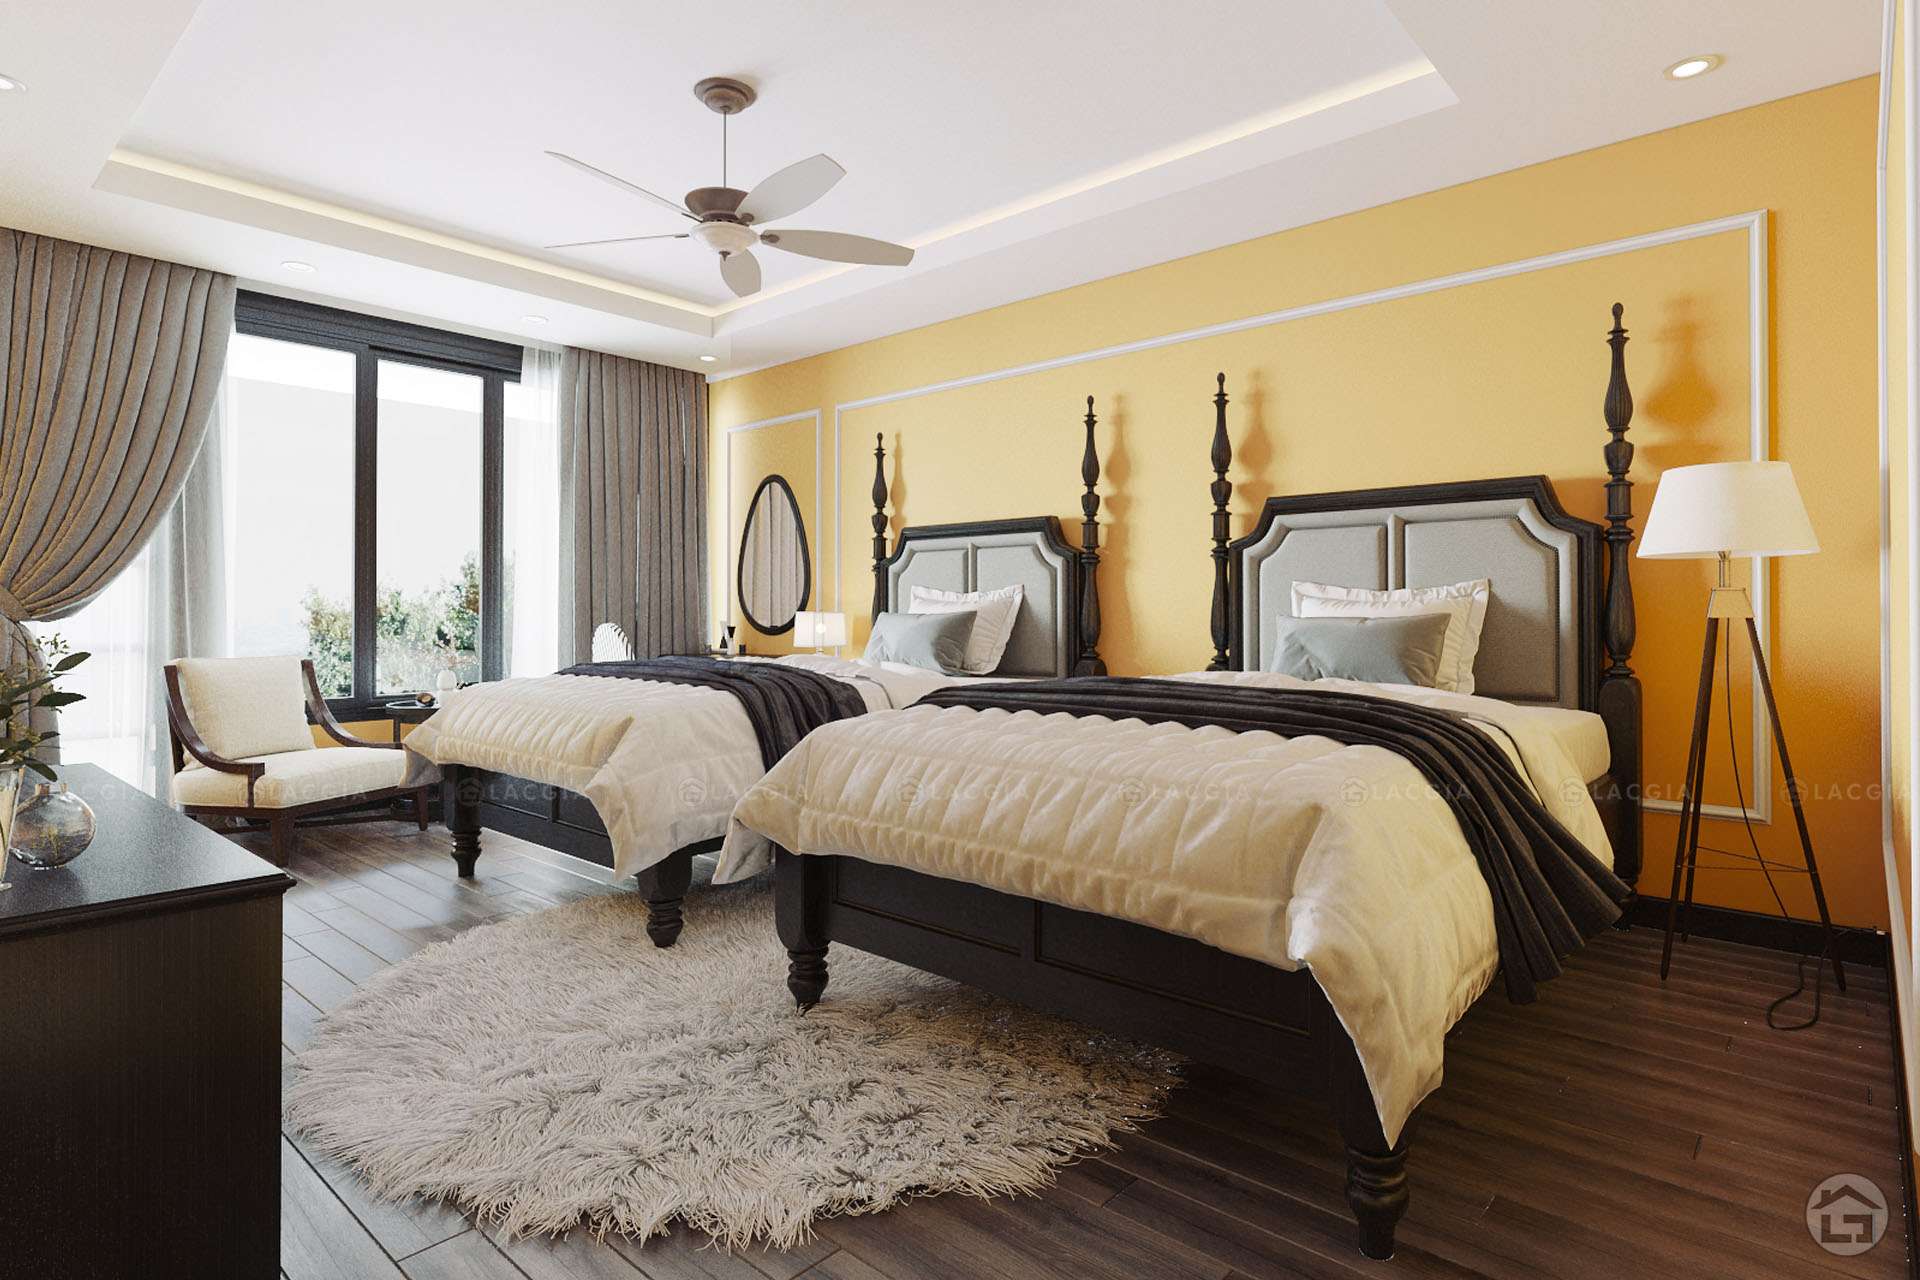 Mẫu phòng ngủ Master thiết kế theo phong cách Đông Dương (Indochine)